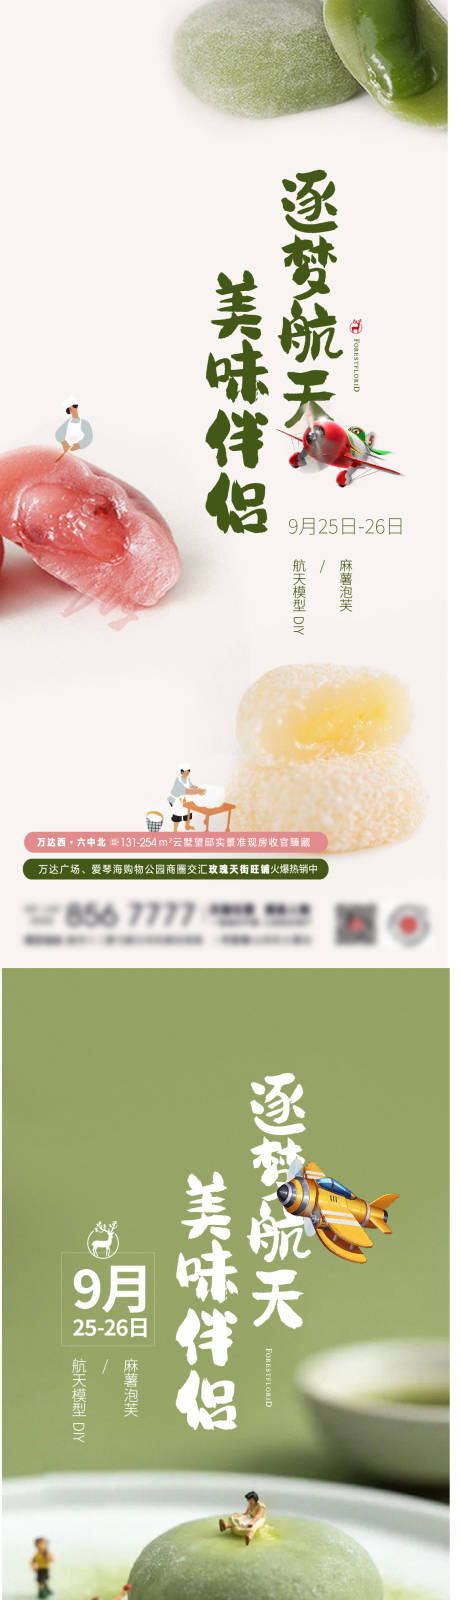 地产手作DIY美食麻薯系列海报